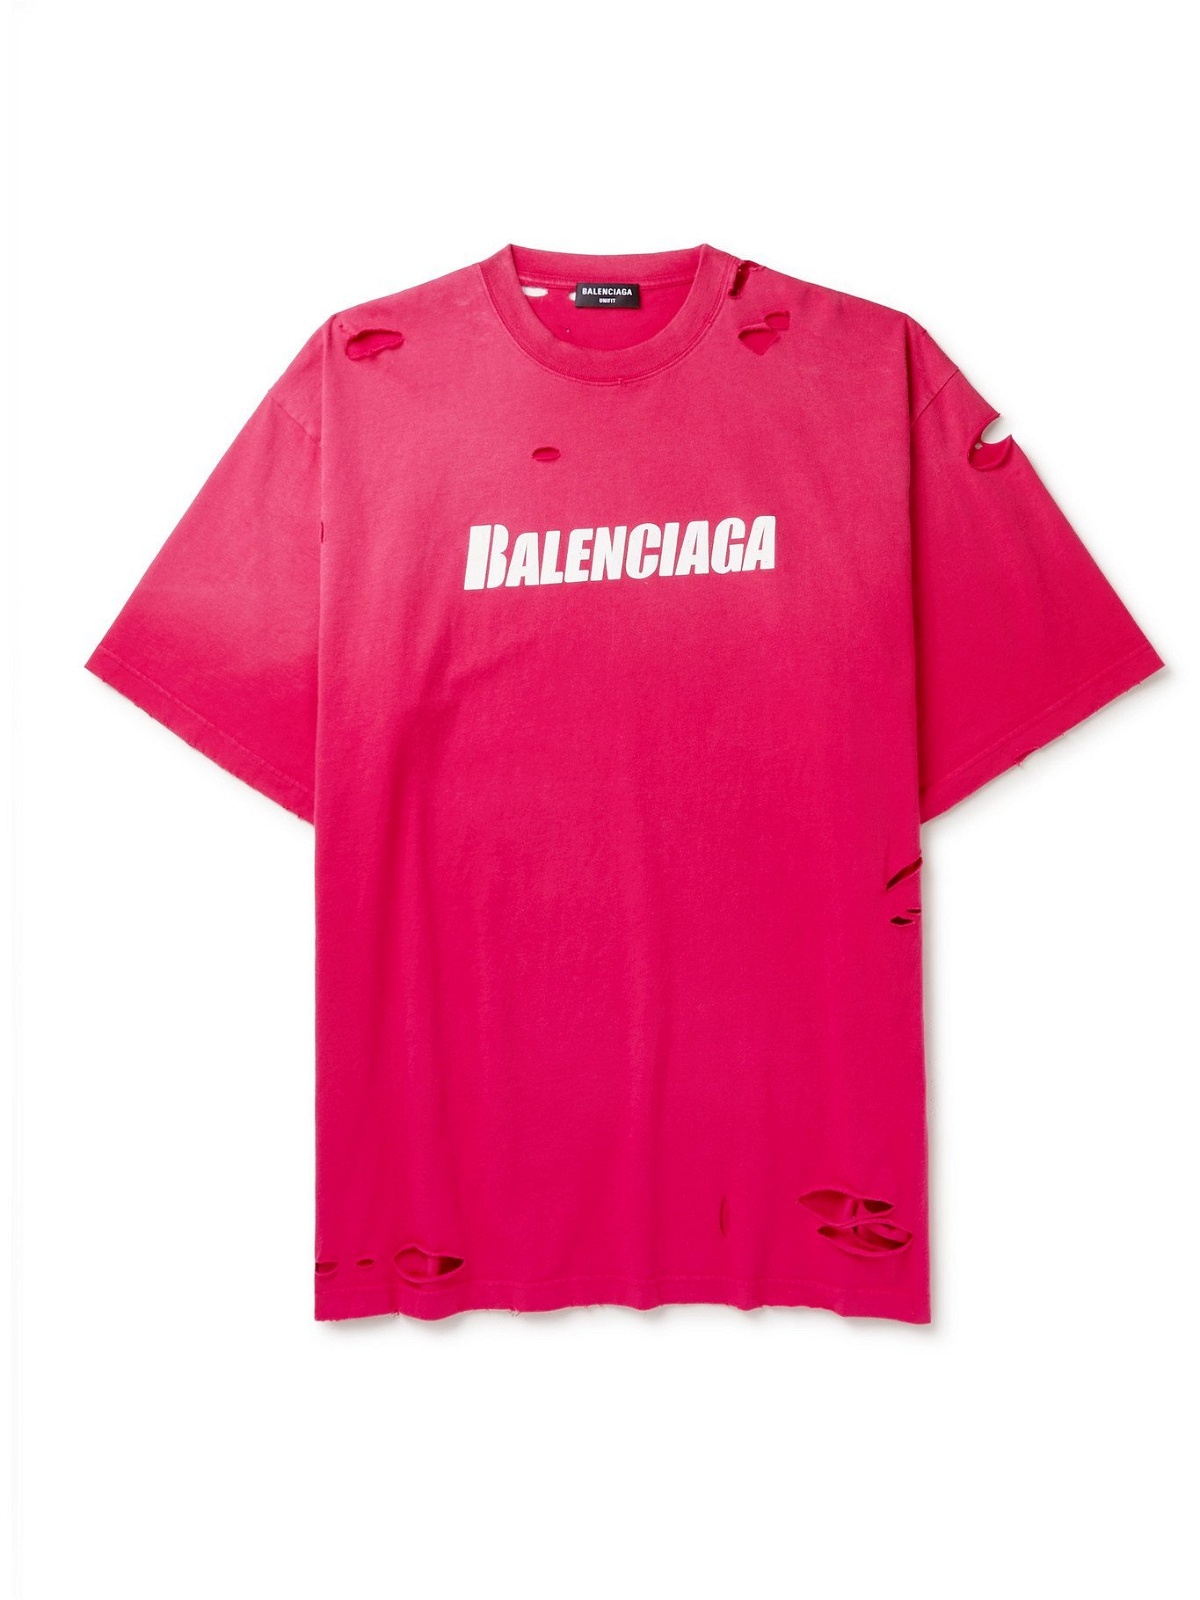 Top hơn 54 balenciaga distressed shirt tuyệt vời nhất  trieuson5